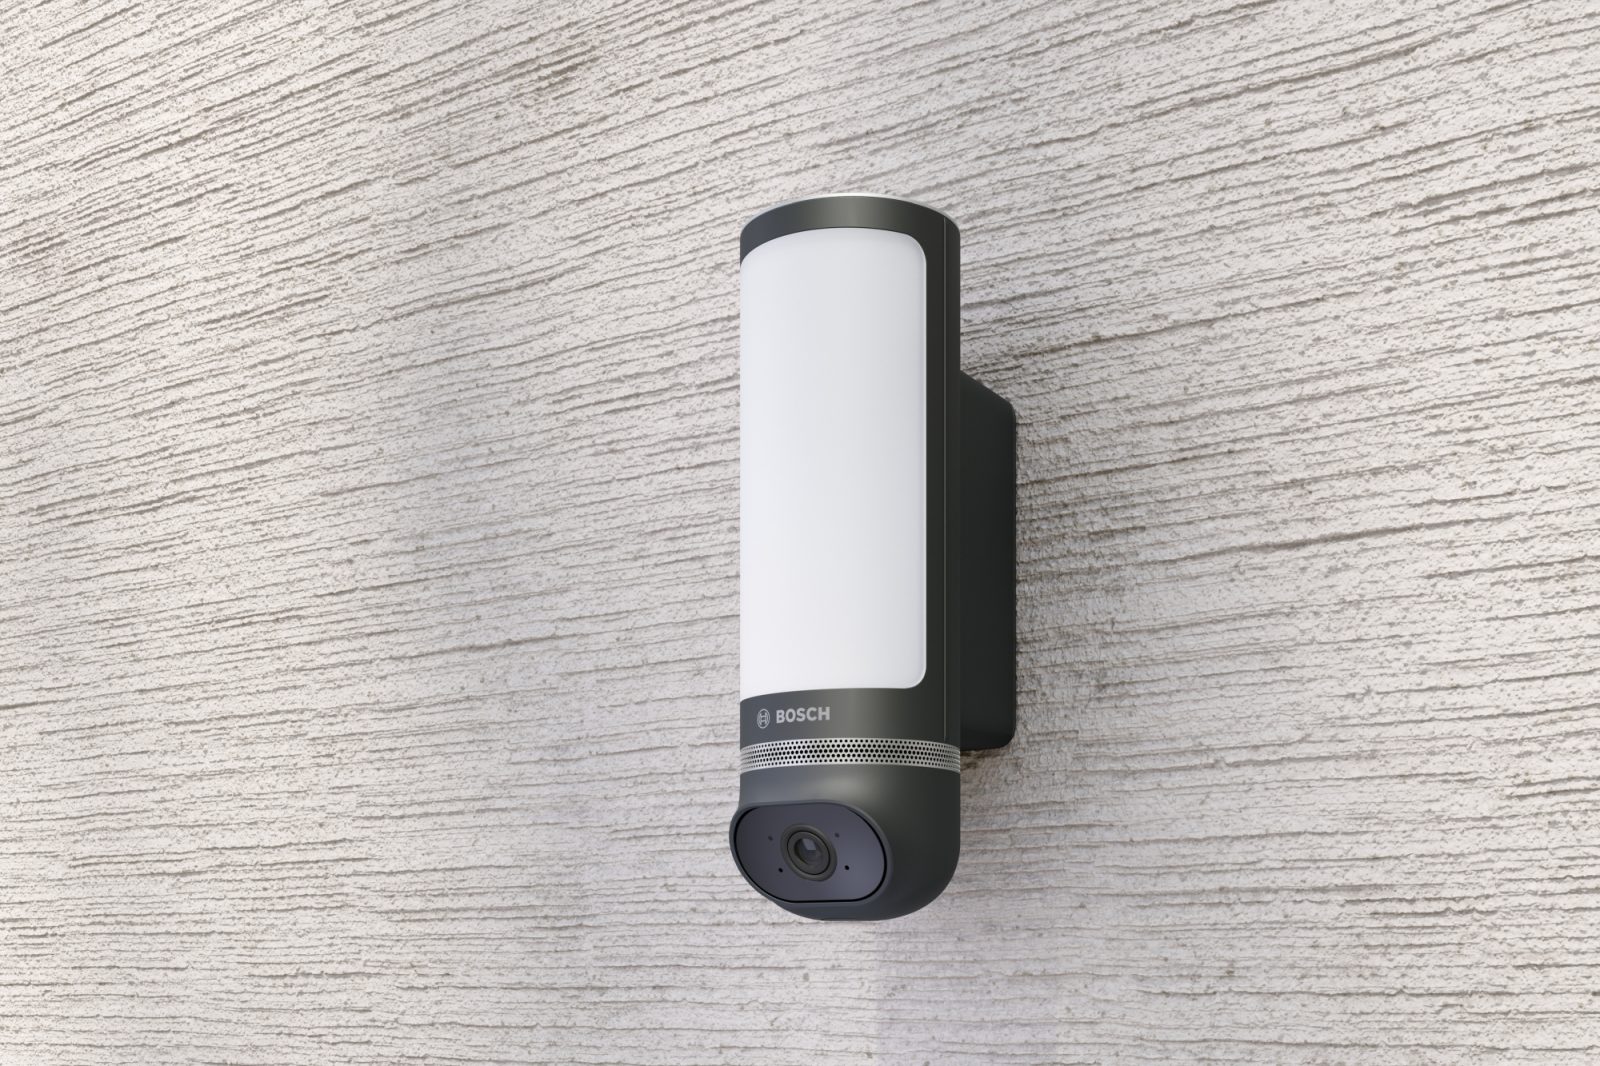 Bosch pokazał nową kamerę. Sprawdzi się jako domowa ochrona